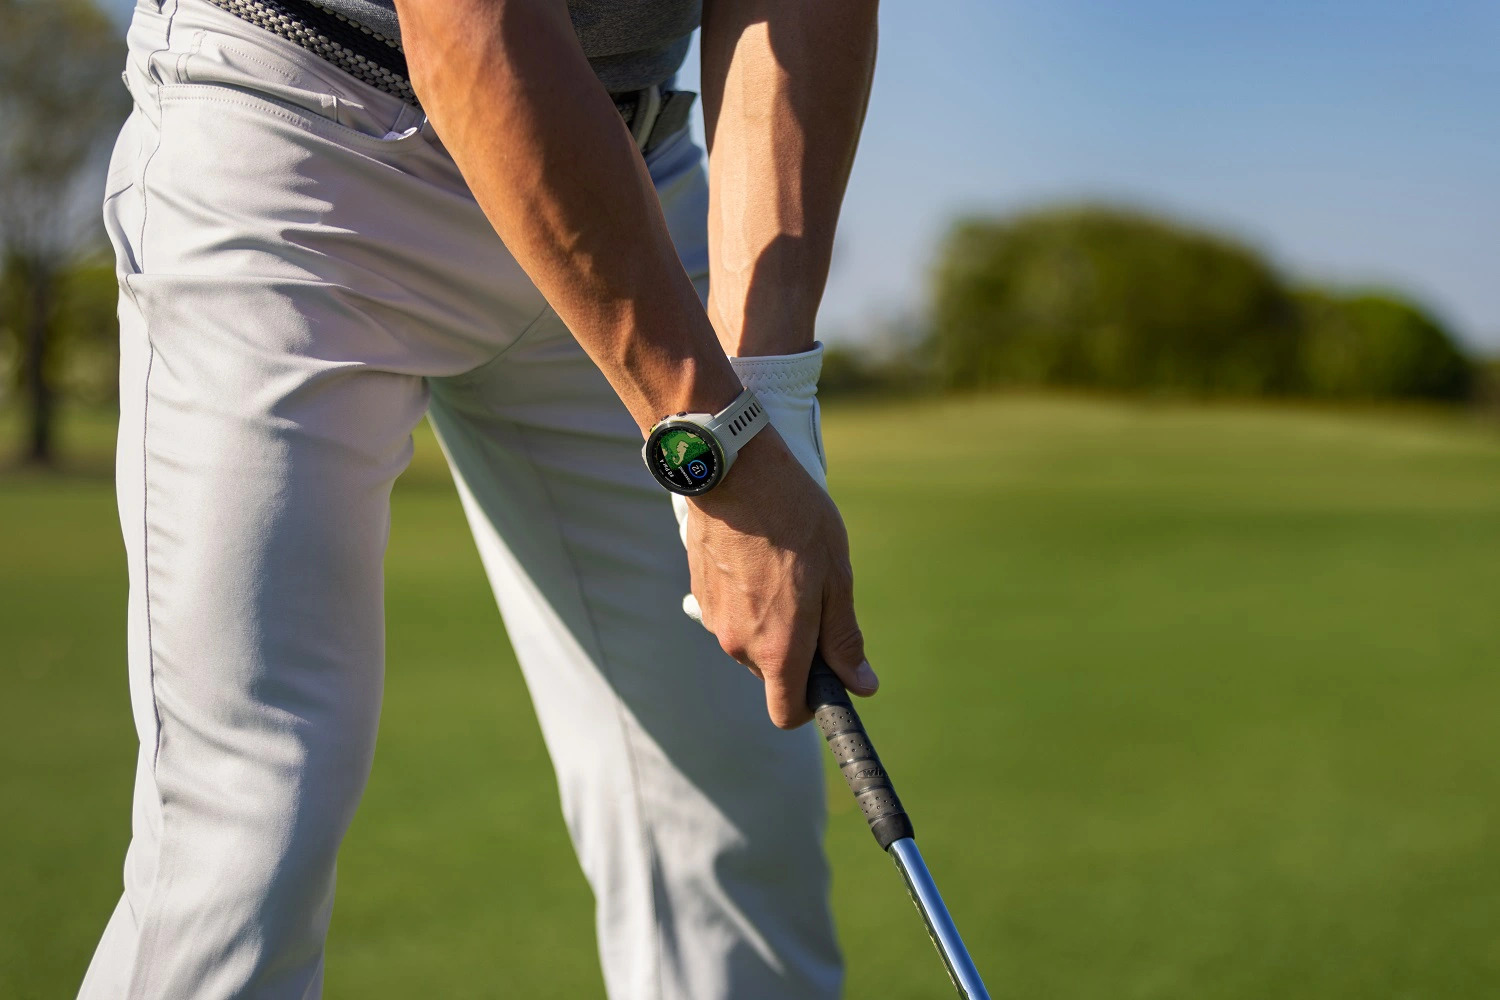 Tuyệt đỉnh đẳng cấp trên sân golf với đồng hồ Garmin Approach S70